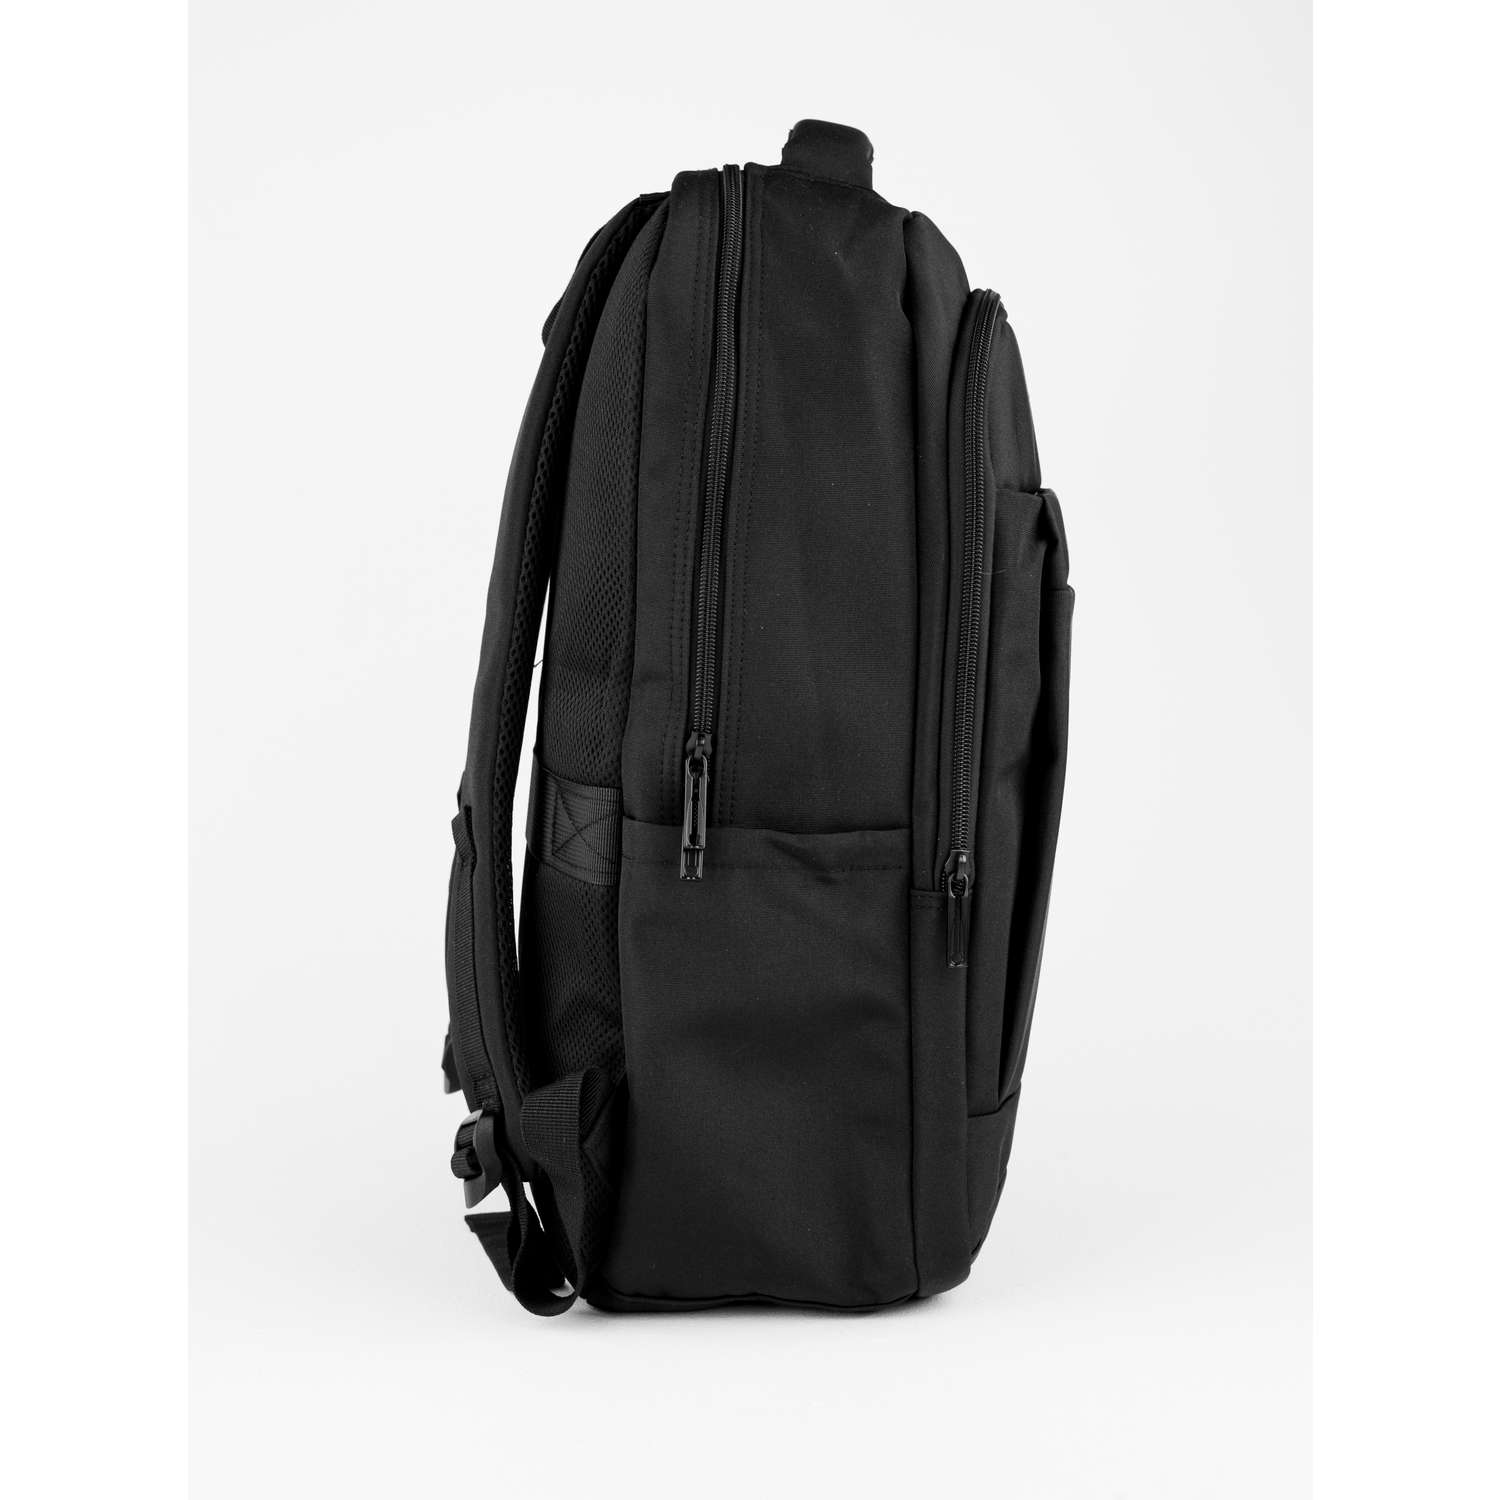 Рюкзак черный DUOYANG школьный подростковый для учебы и спорта - фото 2